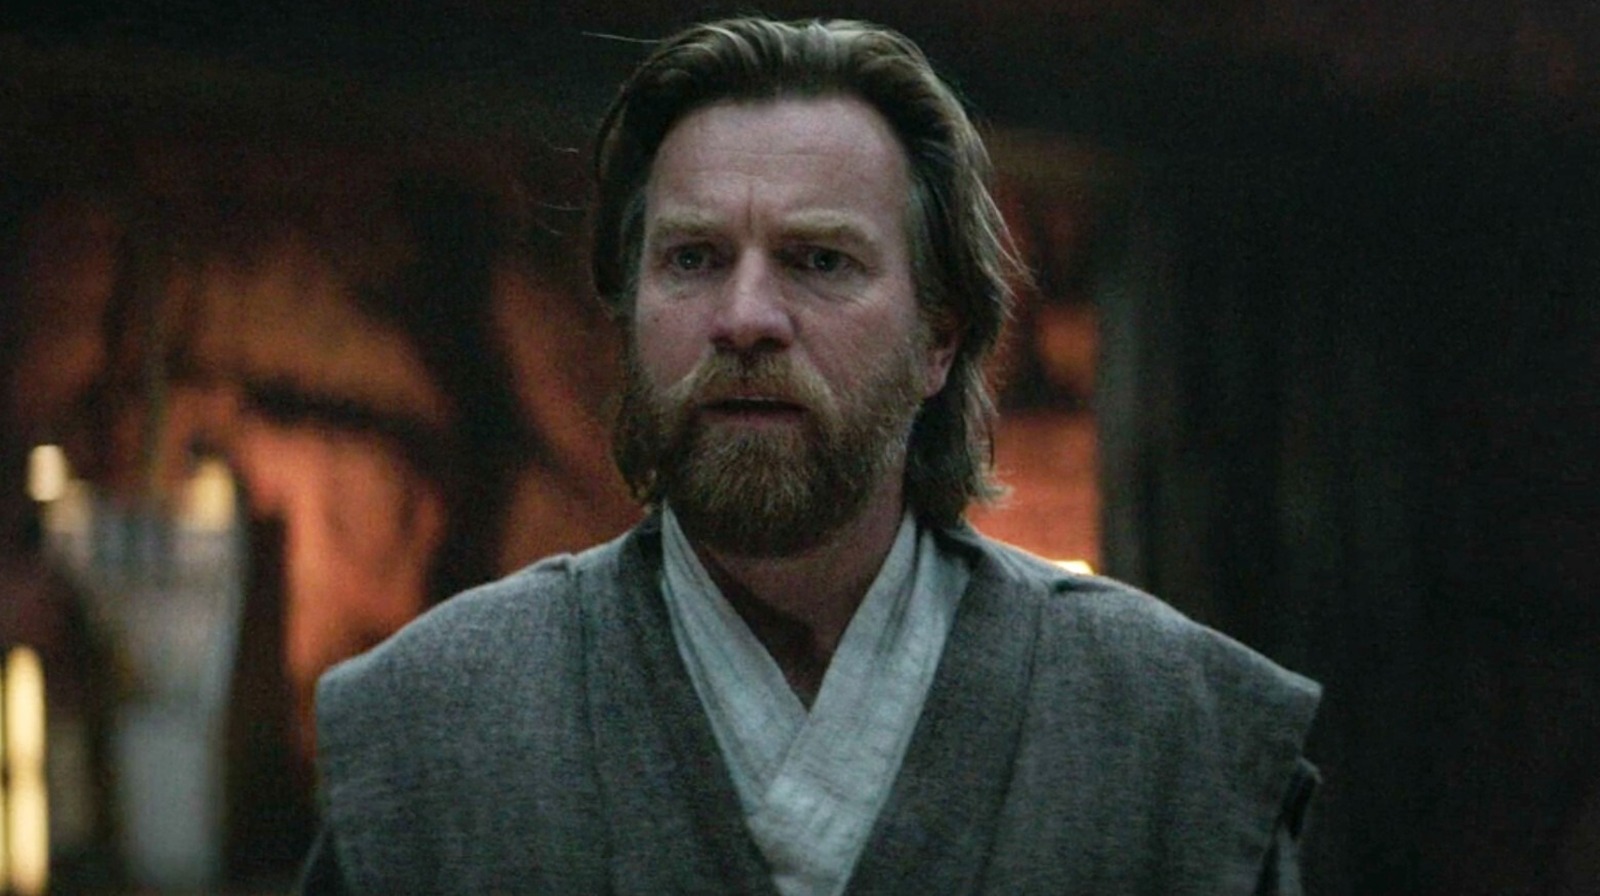 Obi-Wan (Ewan McGregor) - Obi-Wan Kenobi